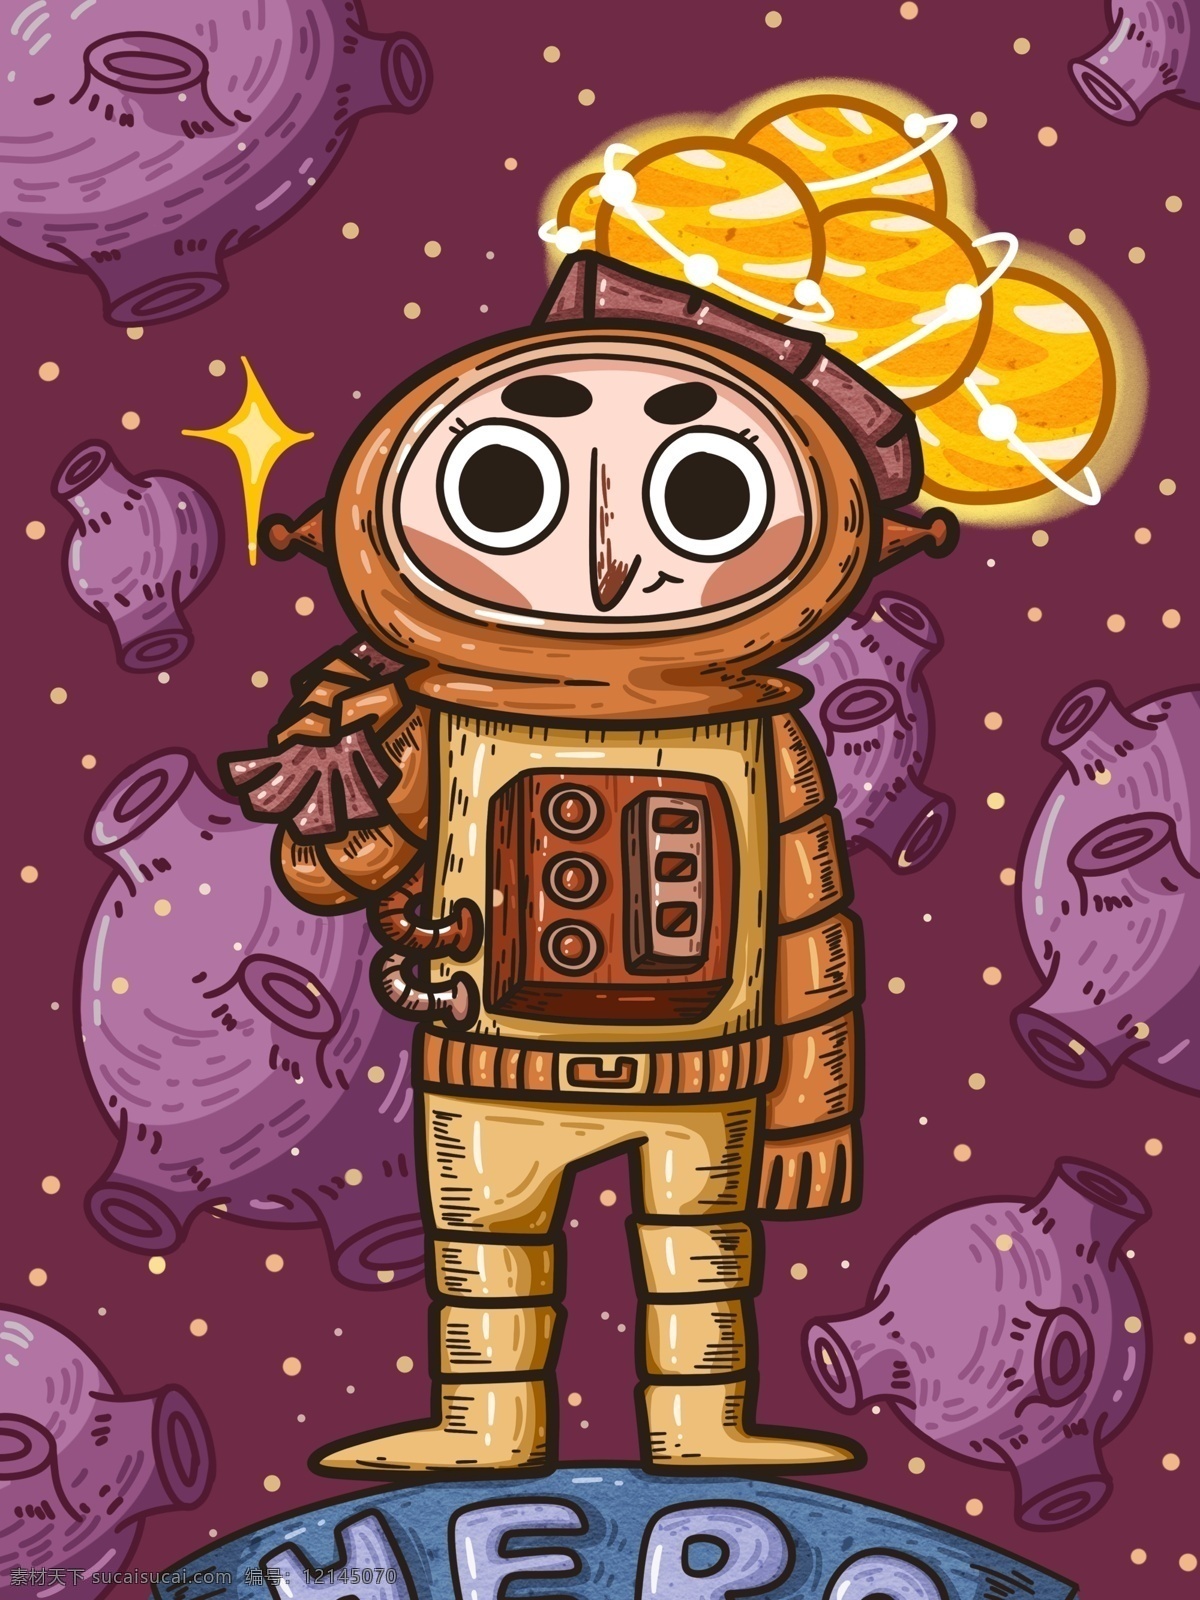 宇宙 奇妙 之旅 带回 小 星球 英雄 宇航员 插画 插图 壁纸 原创 商用 海报